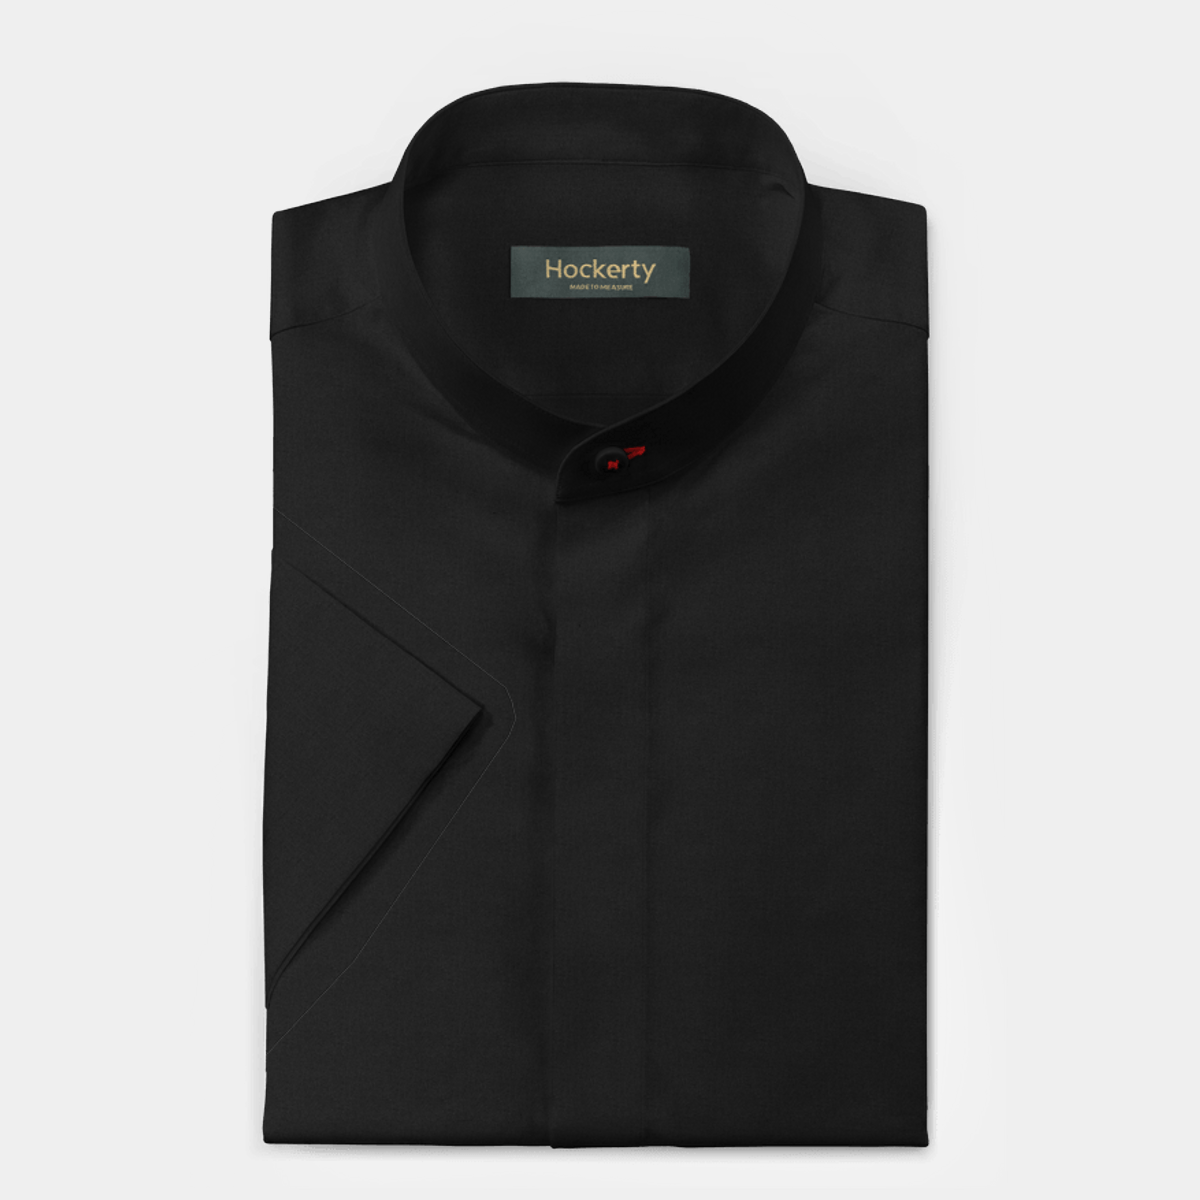 Black Short Sleeved Cotton Mandarin Collar Shirt With Hidden Buttons